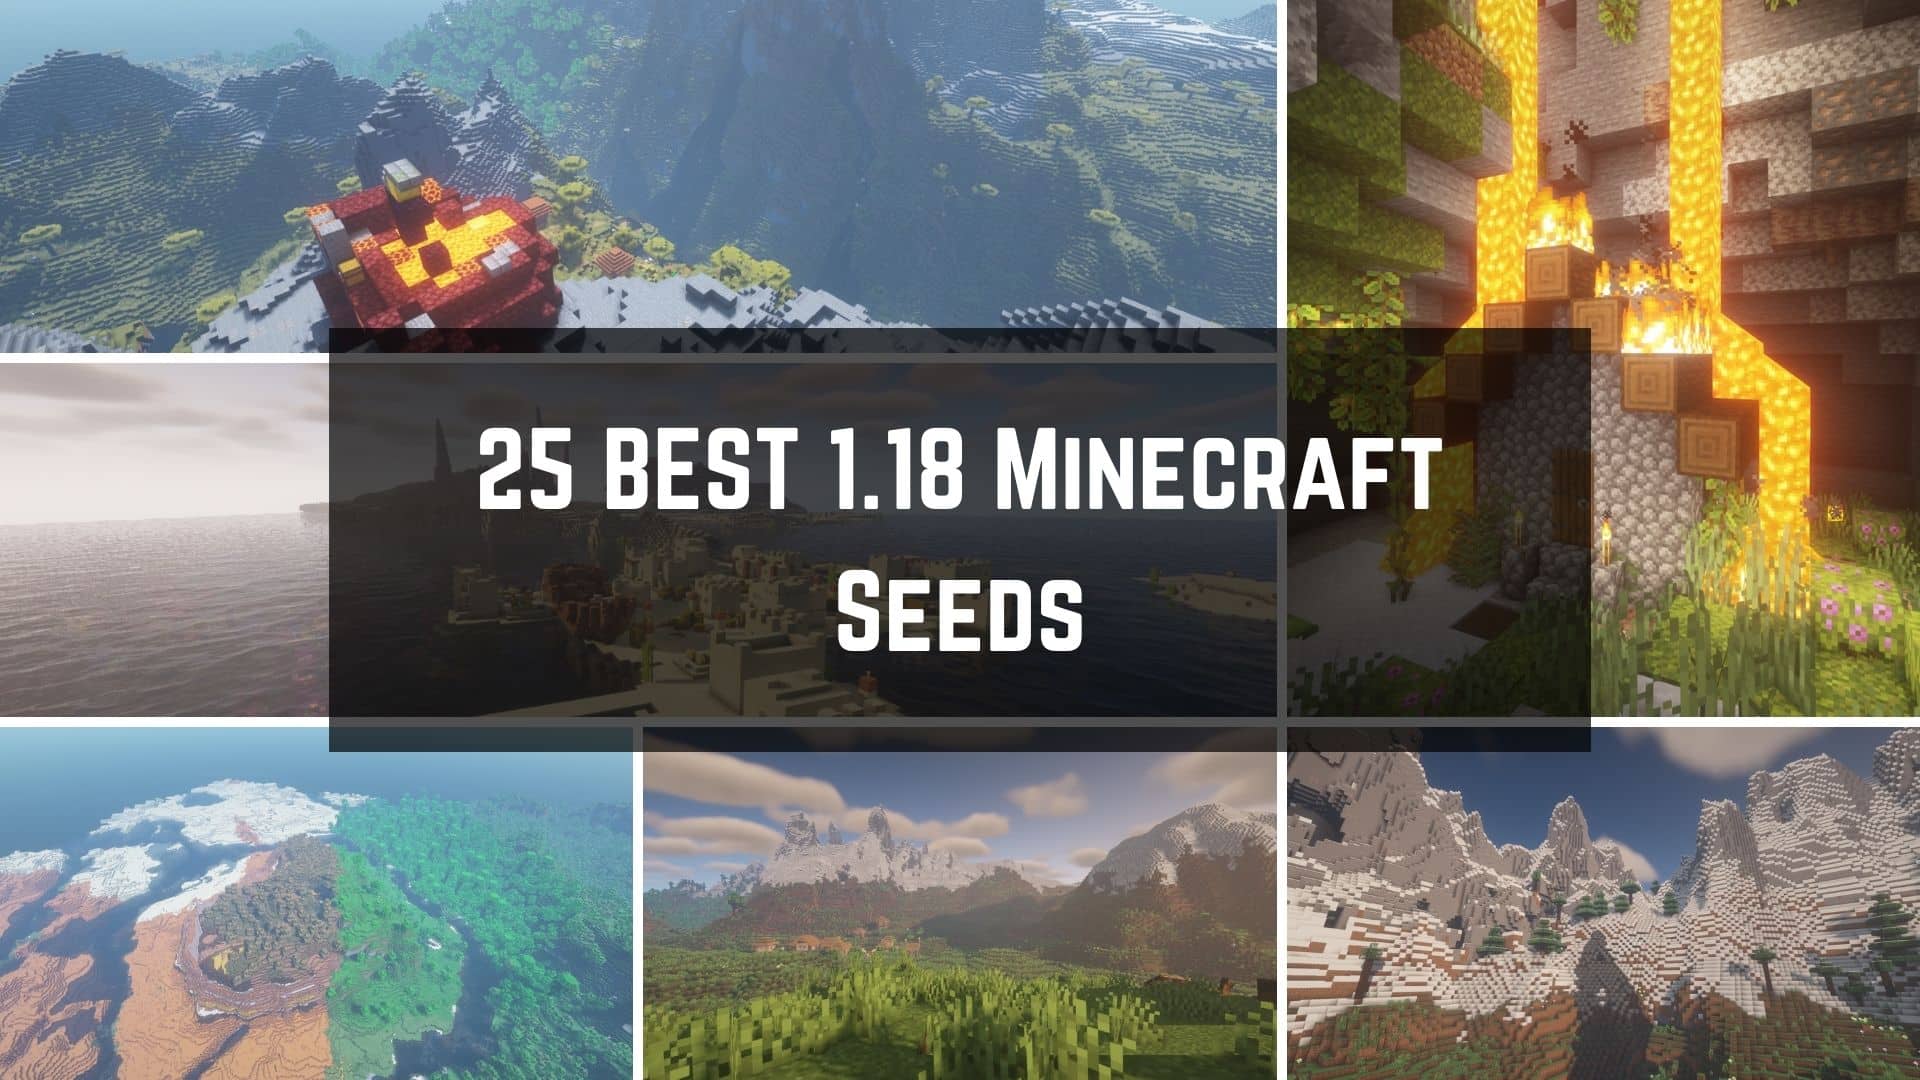 25 Best Minecraft 1.18 Seeds